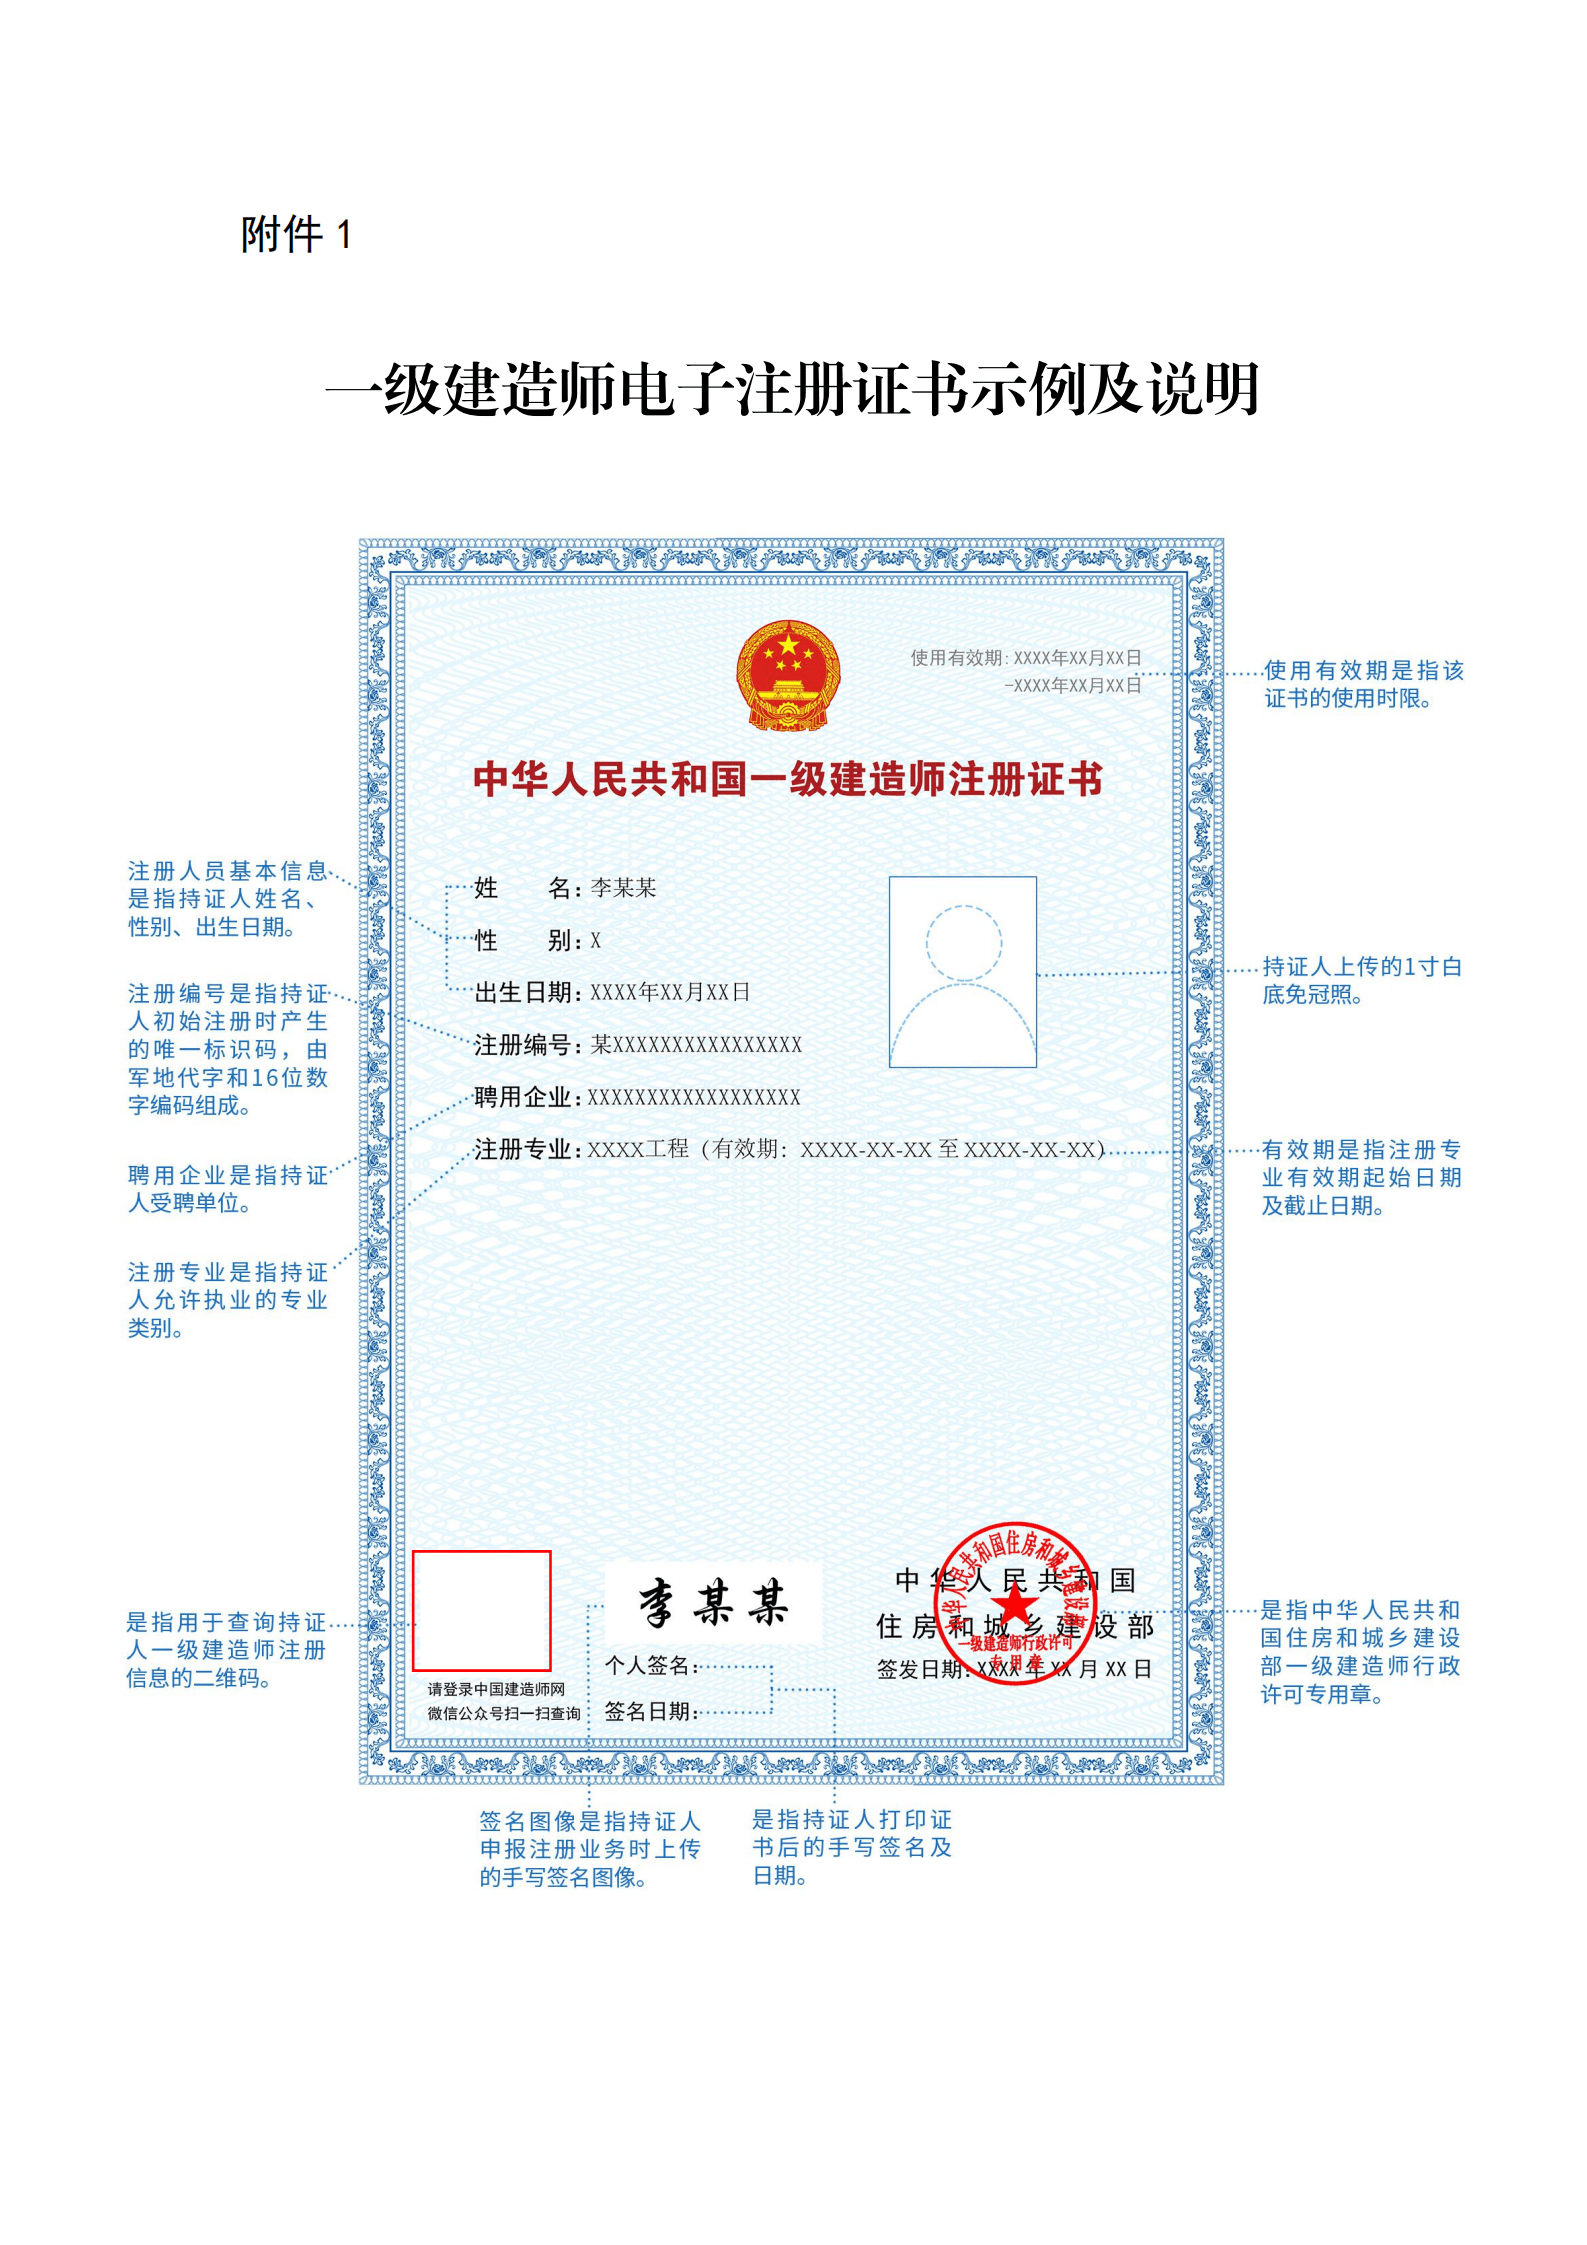 北京,上海,浙江,海南四地开展一级建造师电子注册证书试点!